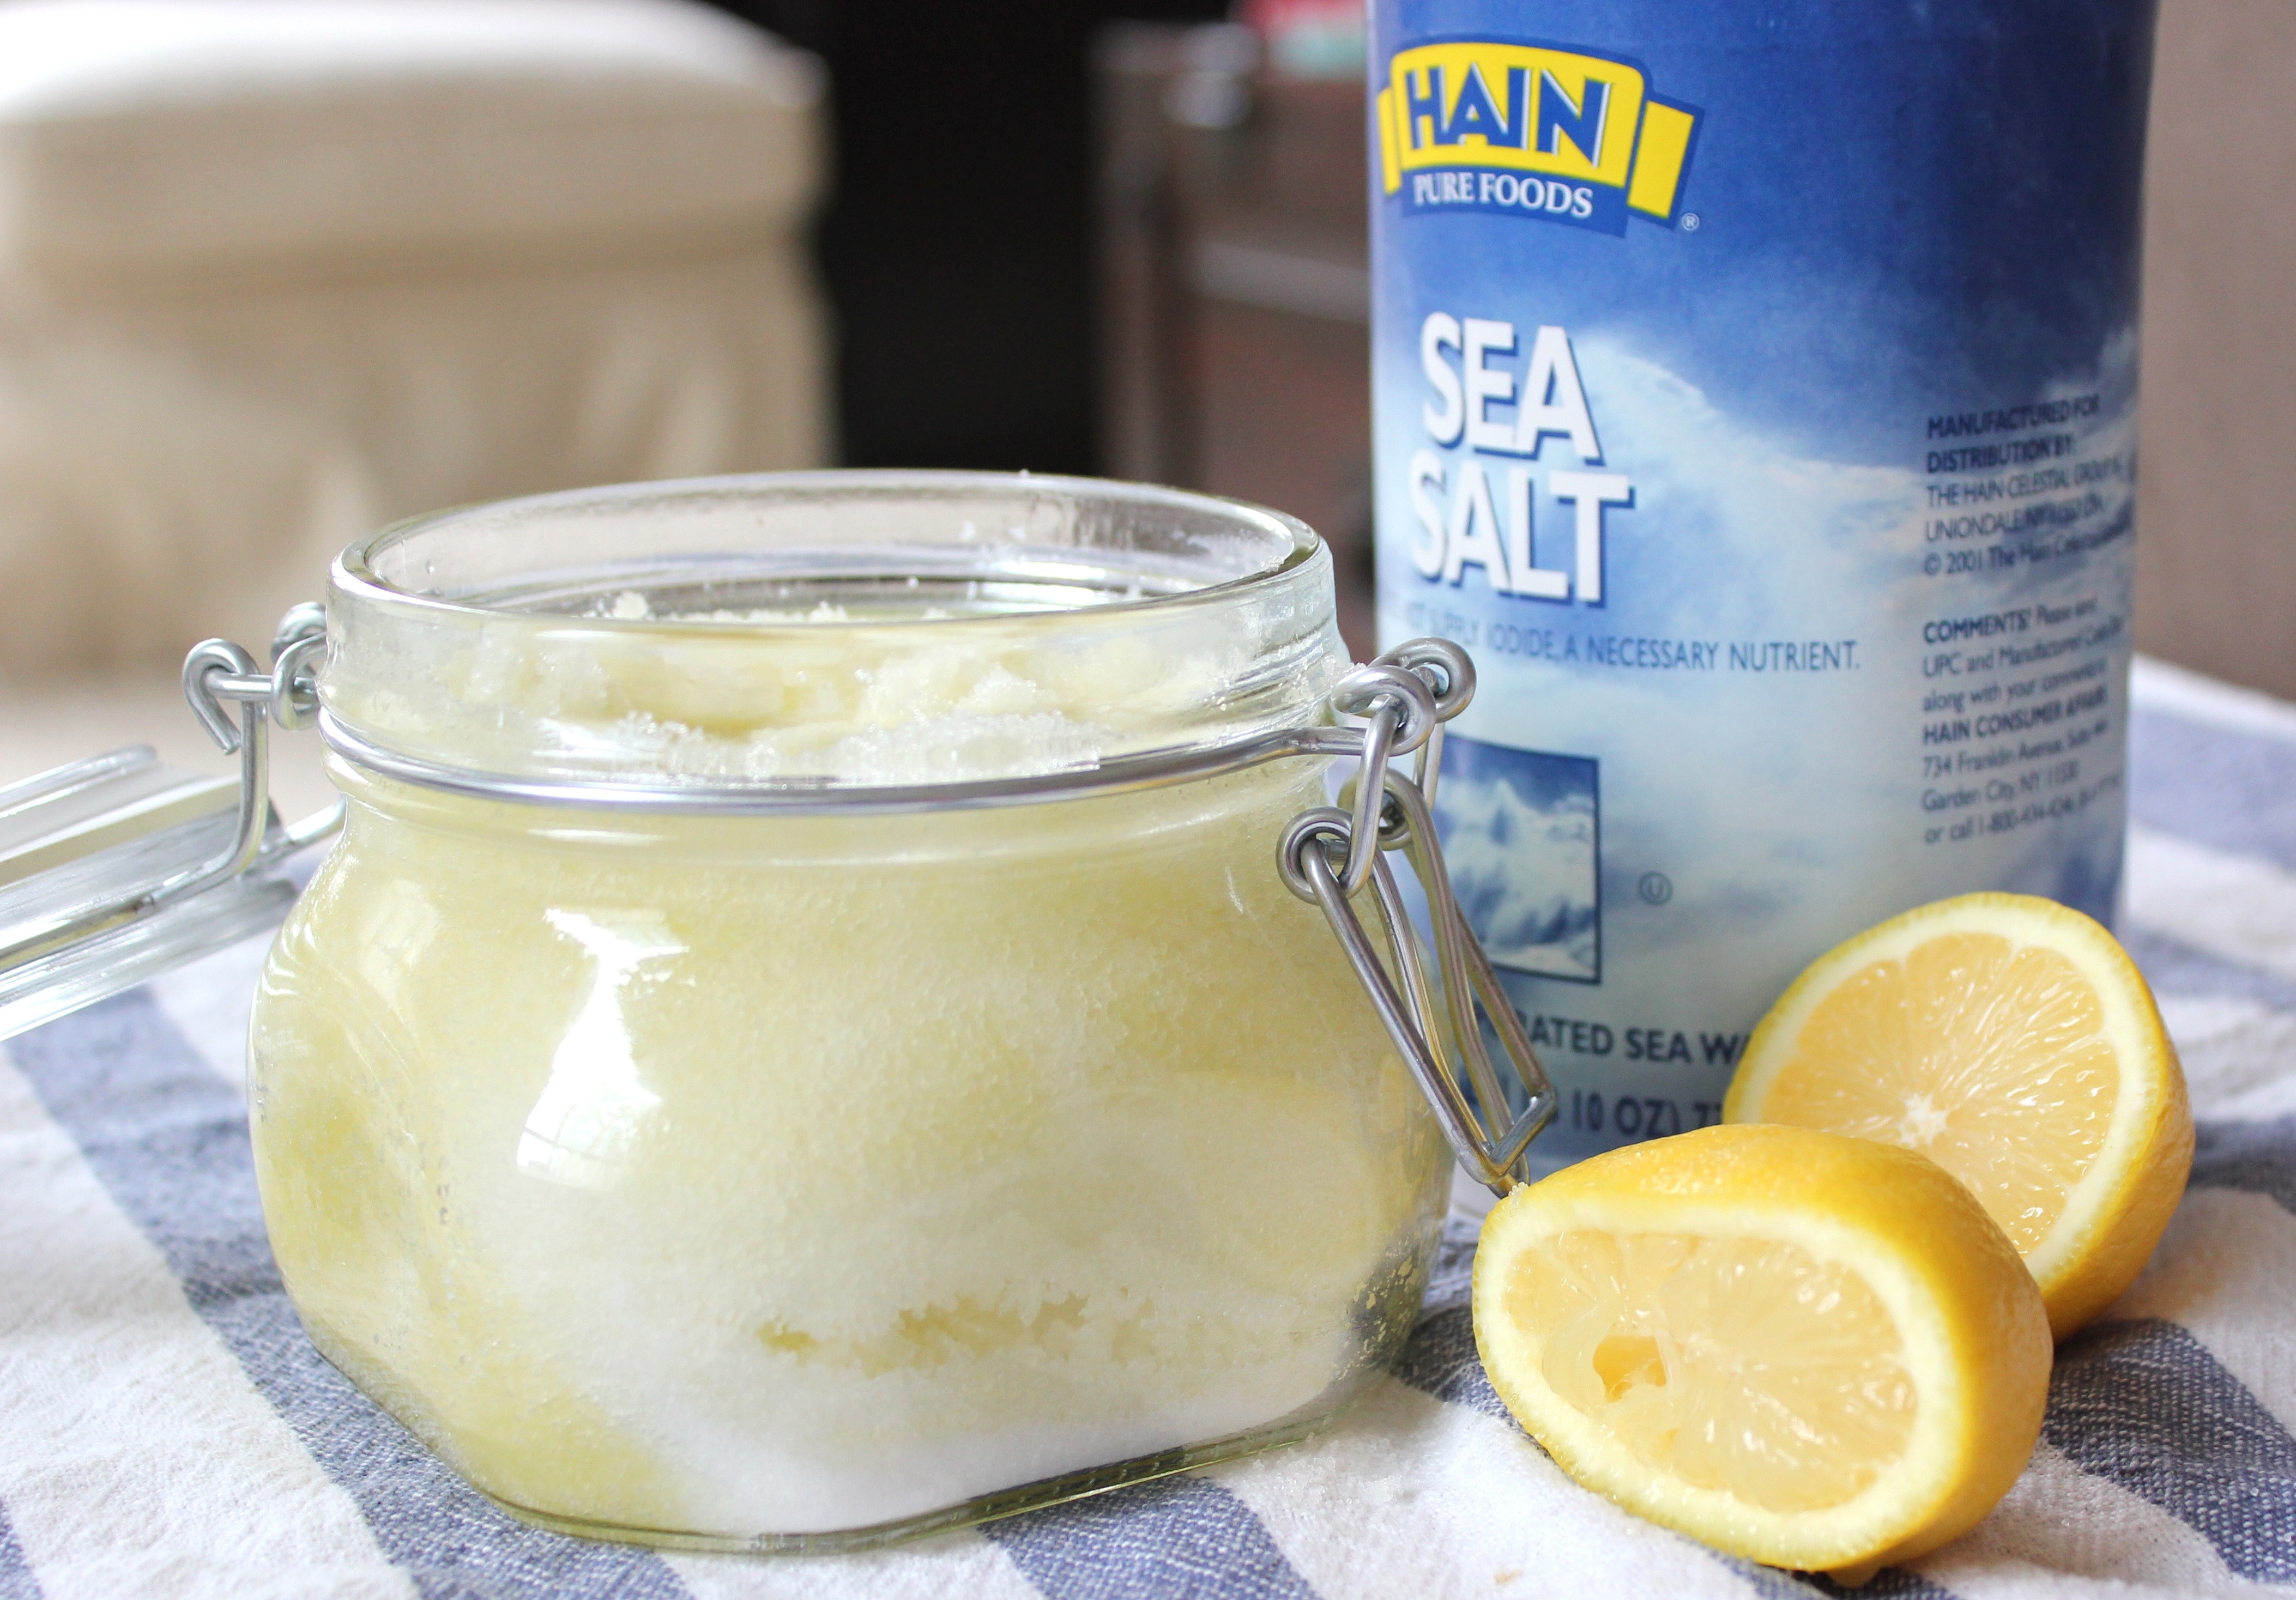 Best ideas about DIY Salt Scrub
. Save or Pin DIY Exfoliating Body Scrub Now.